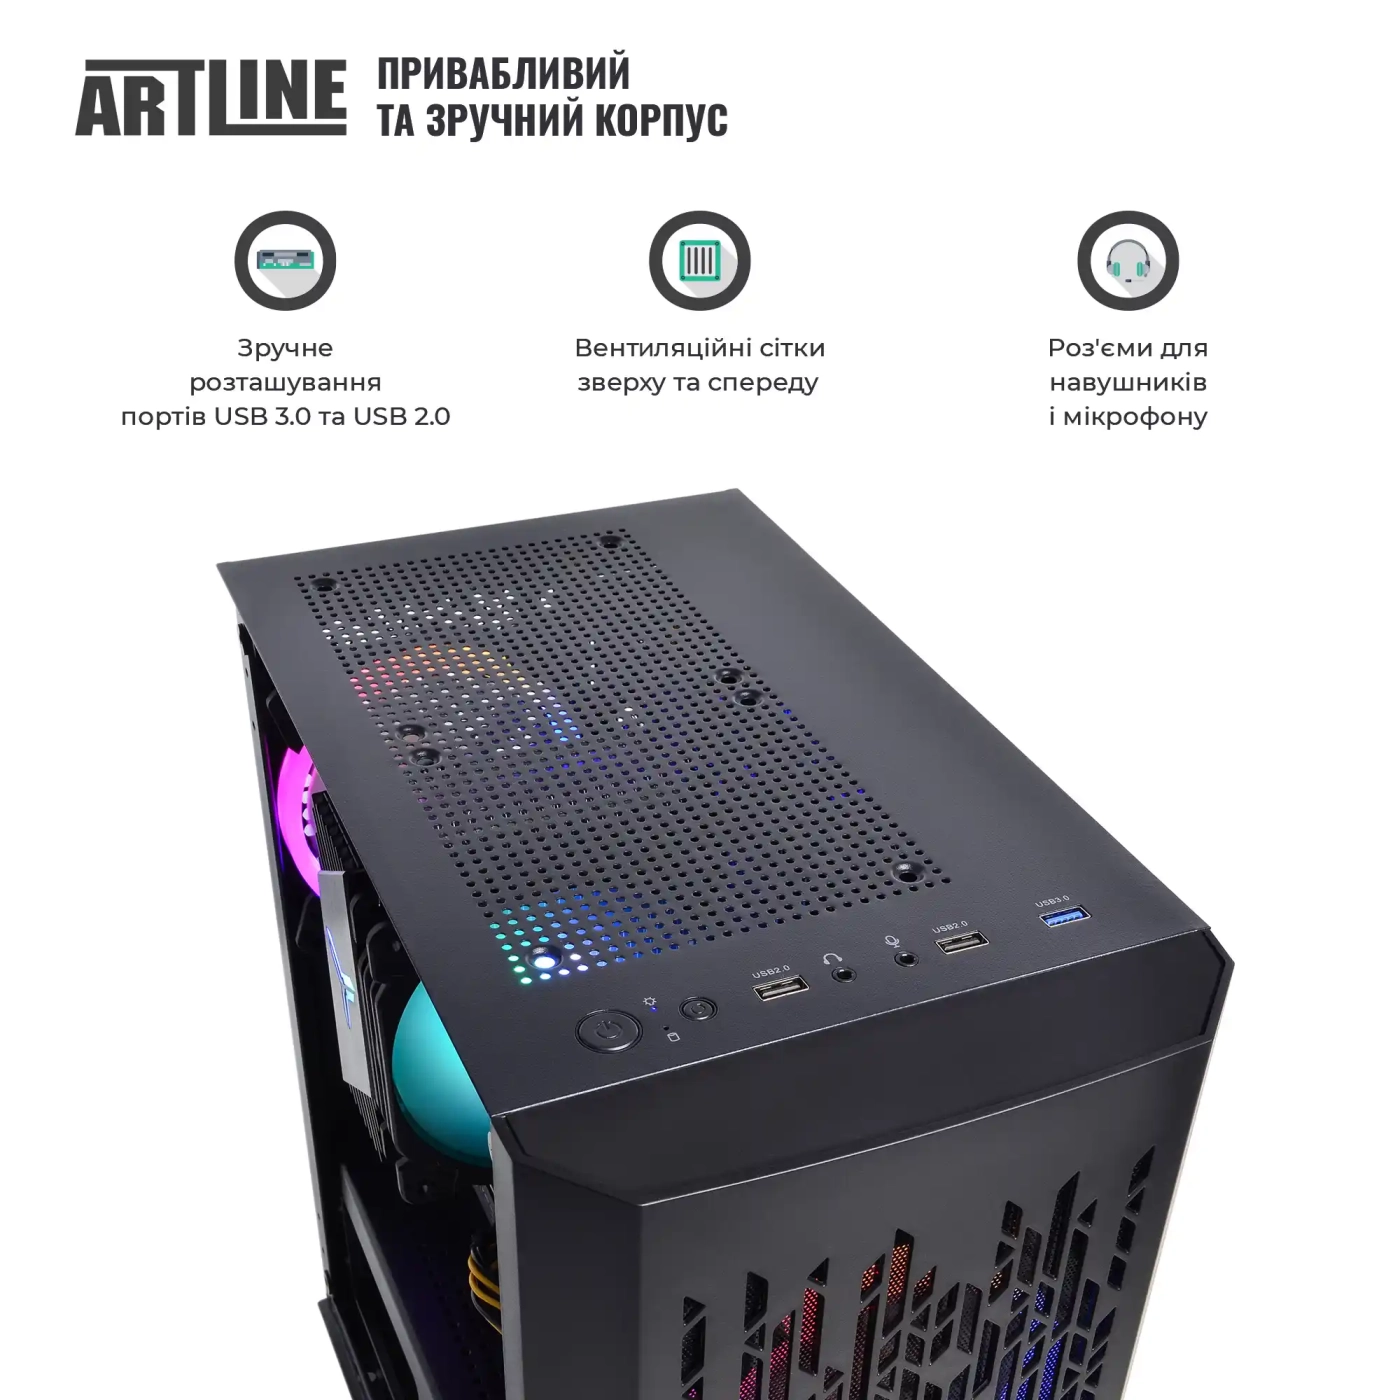 Купить Компьютер ARTLINE Gaming X39v74 - фото 4